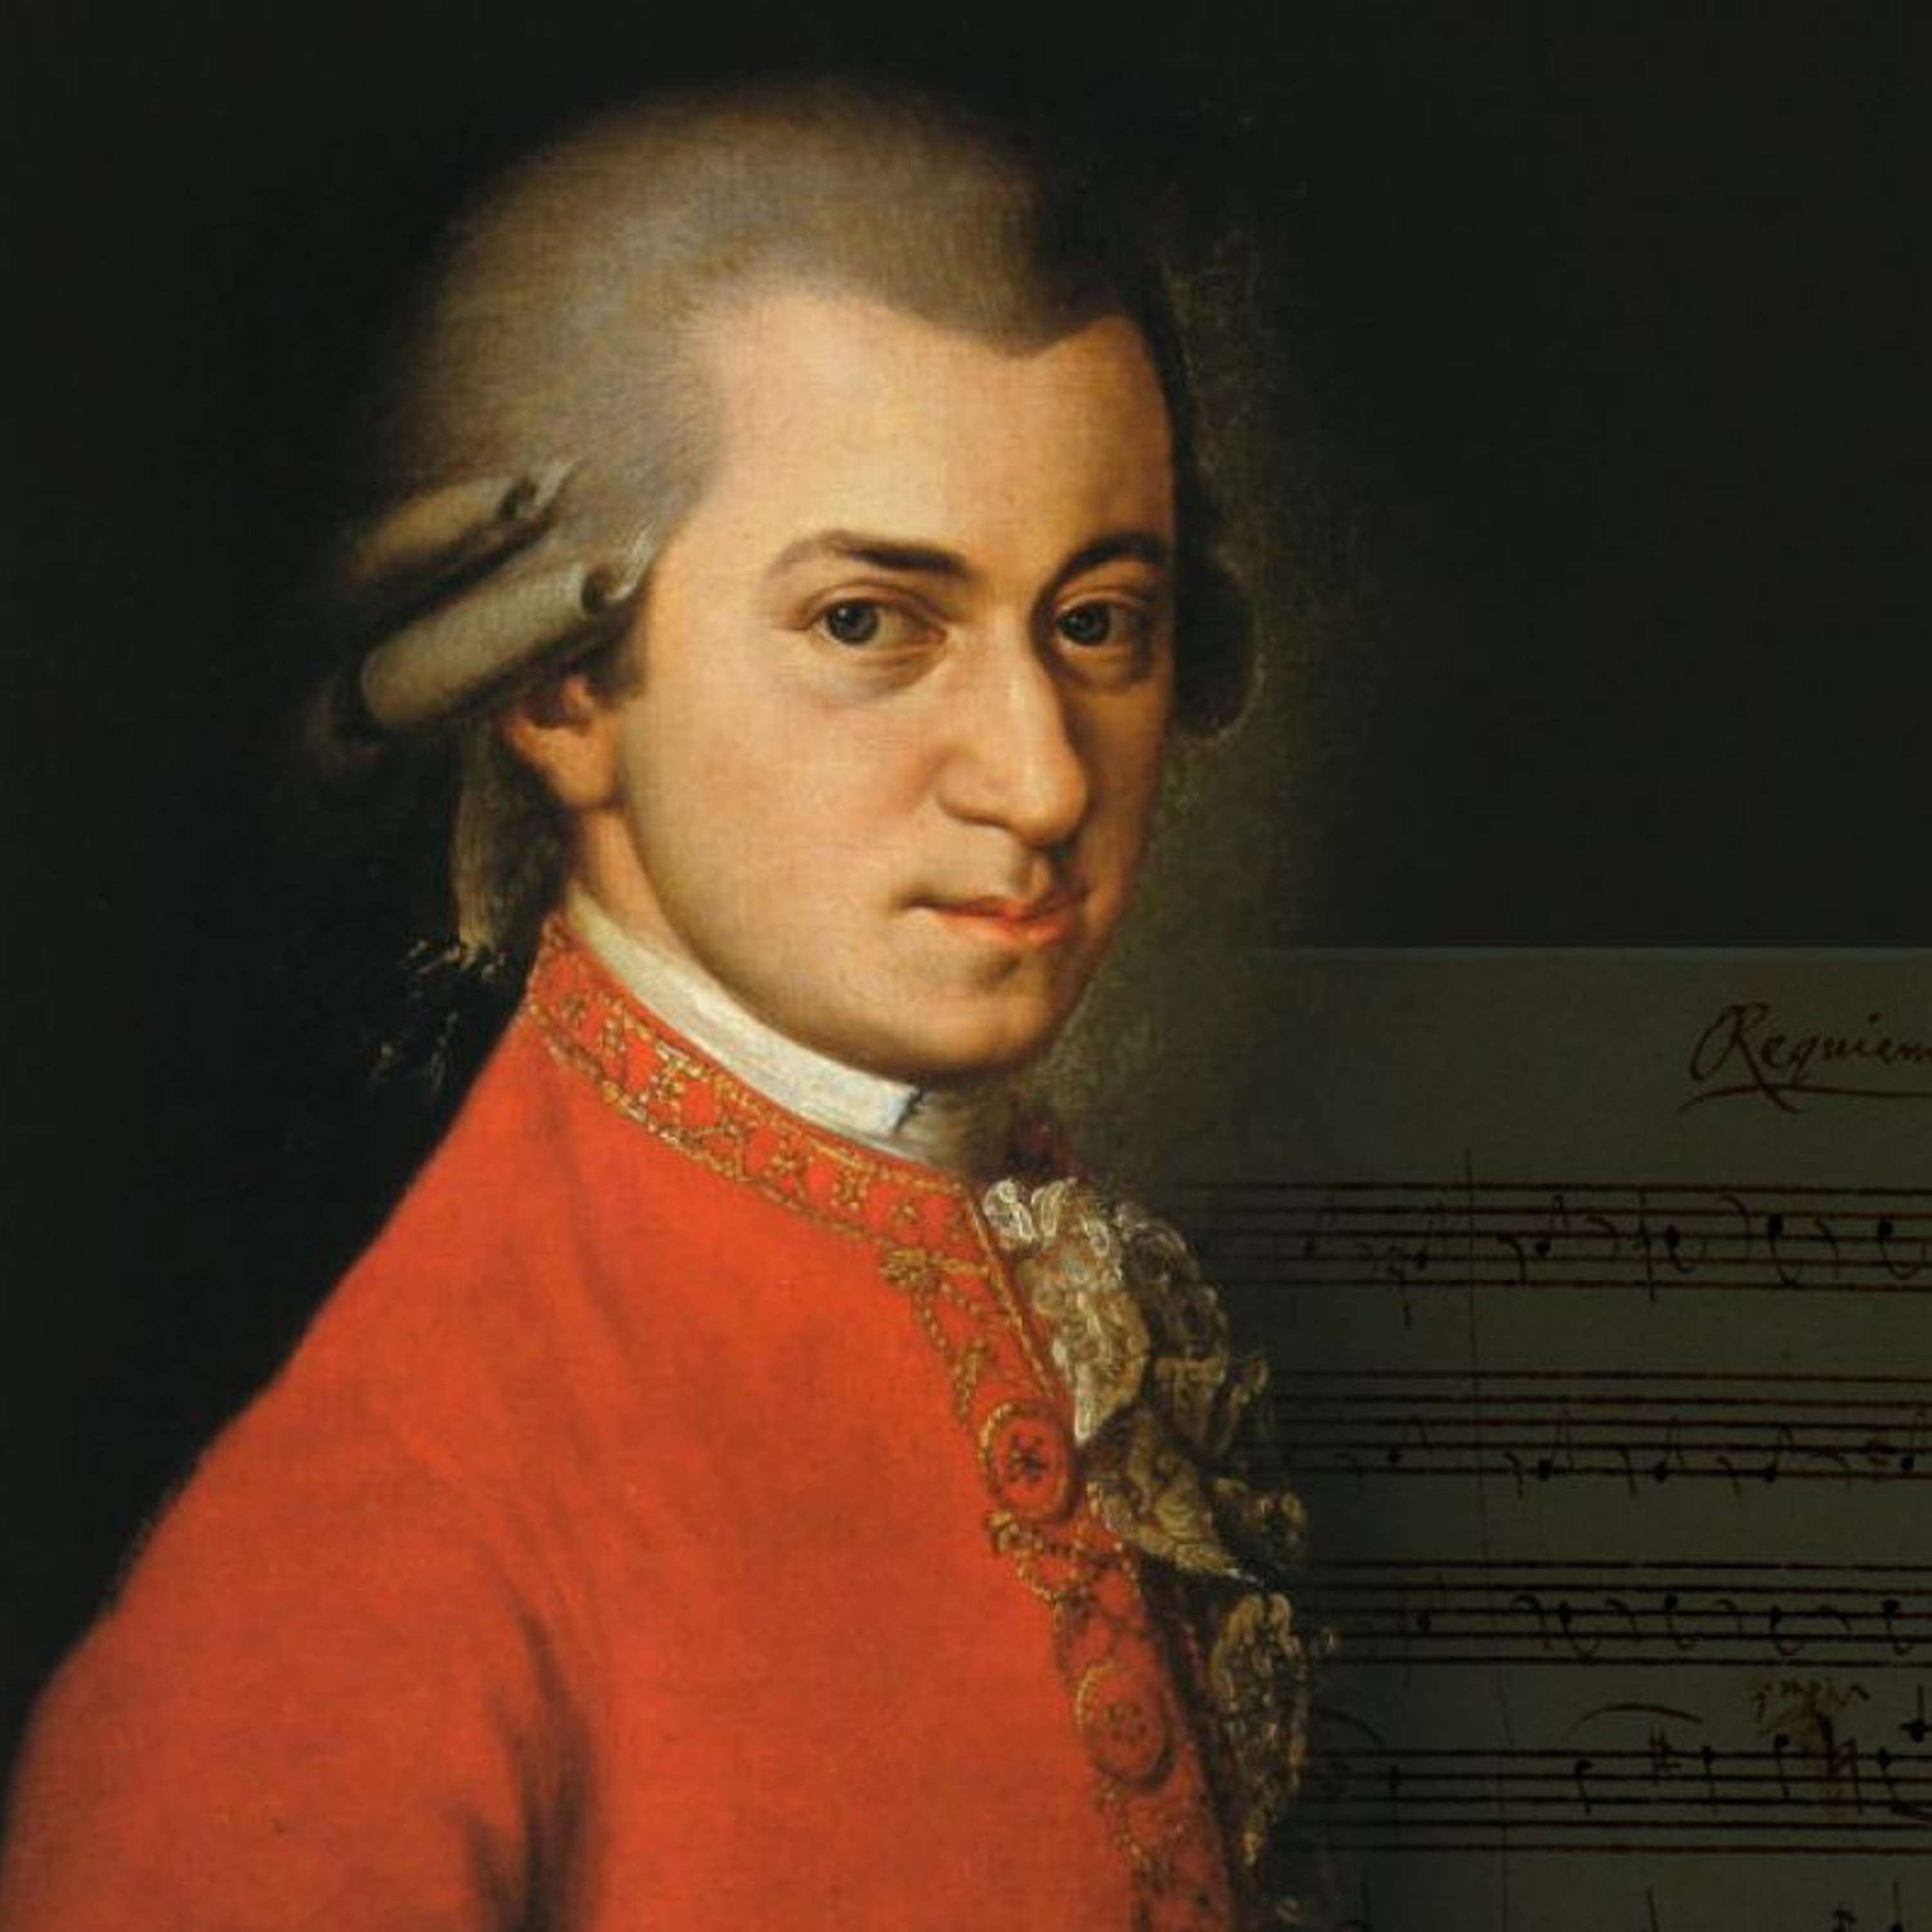 Auditorium 166 - Wolfgang Amedeus Mozart (1756-1791) -  Concerto in la maggiore per clarinetto e orchestra, K. 622 (1791) e Sinfonia n. 25 in sol minore, K. 183 (1773)